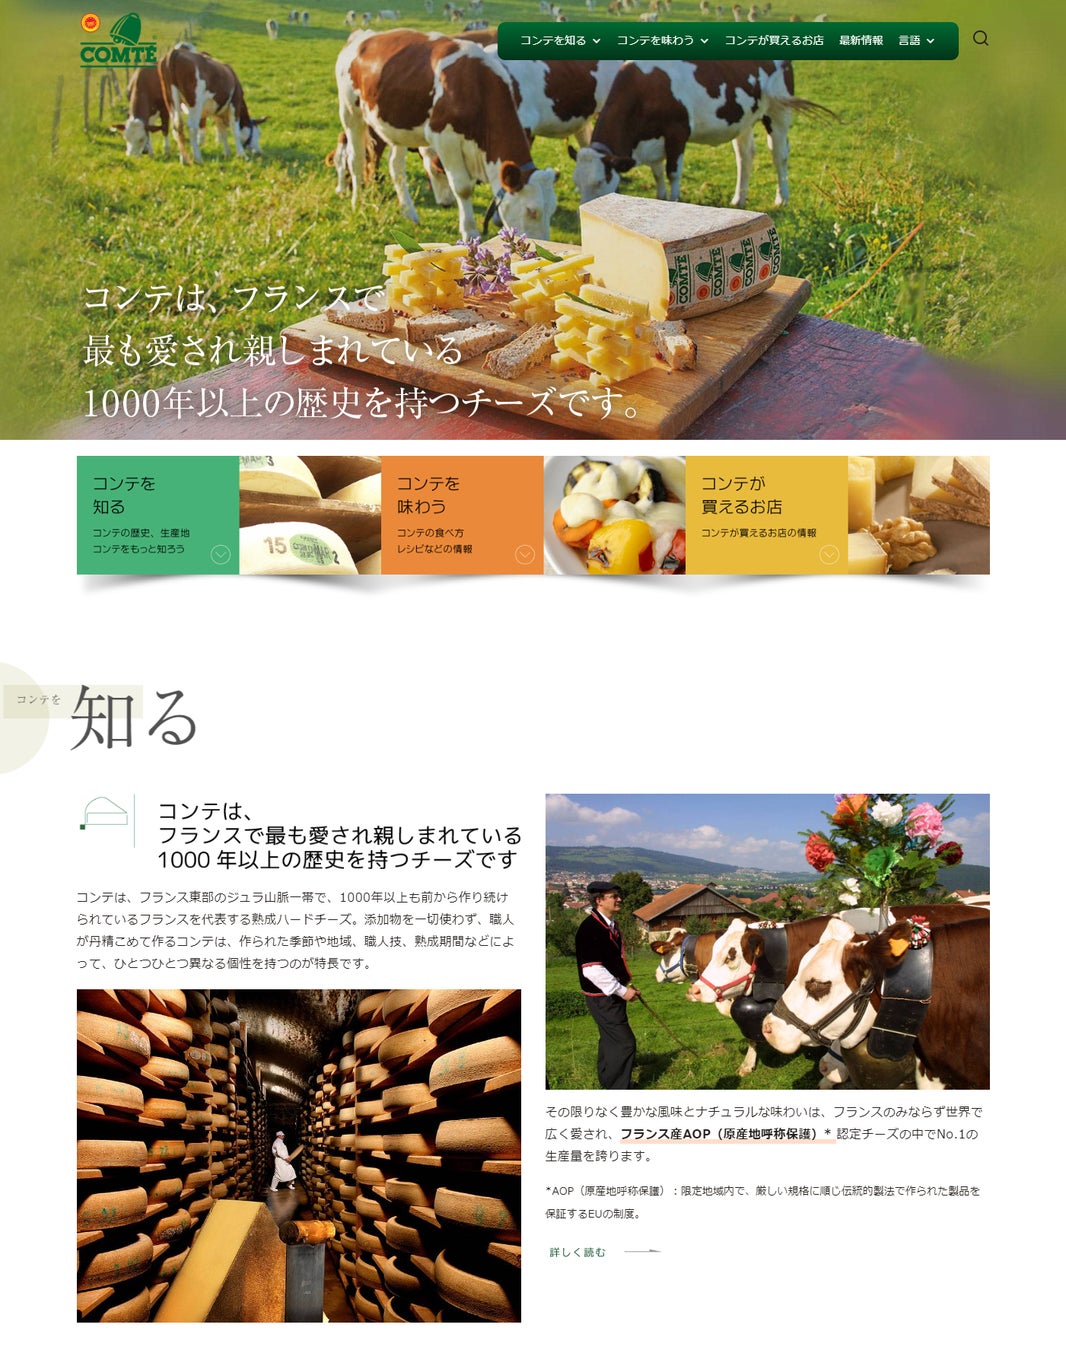 コンテチーズ生産者協会が日本語ウェブサイトを全面リニューアル